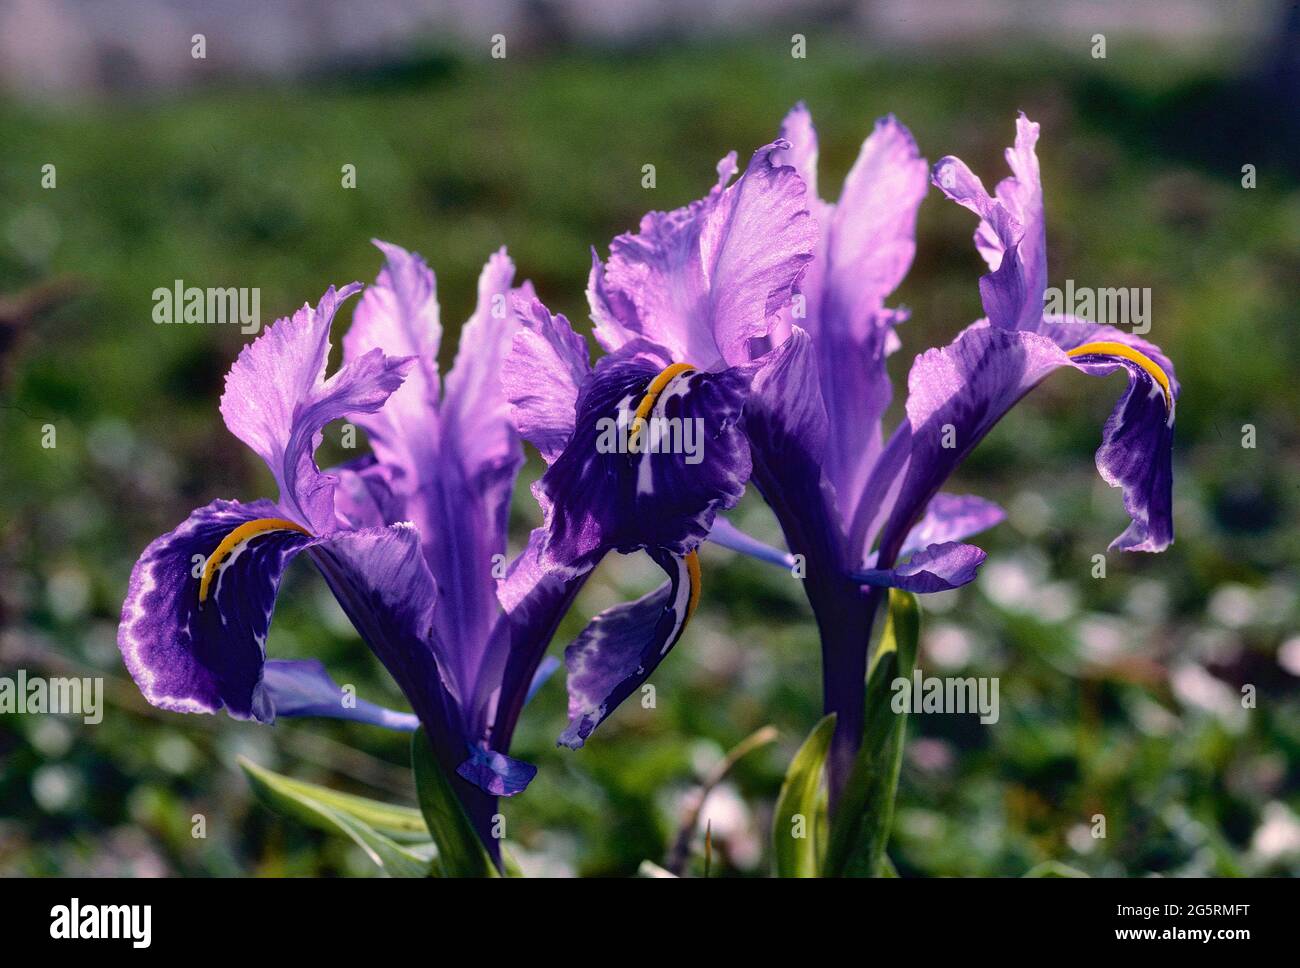 Gelbliche Schwertlilie, Iris lutescence, Iridaceae, blühend, Blüten, Blume, Pflanze, Provinz Malaga, Anadulsien, Spanien Stock Photo